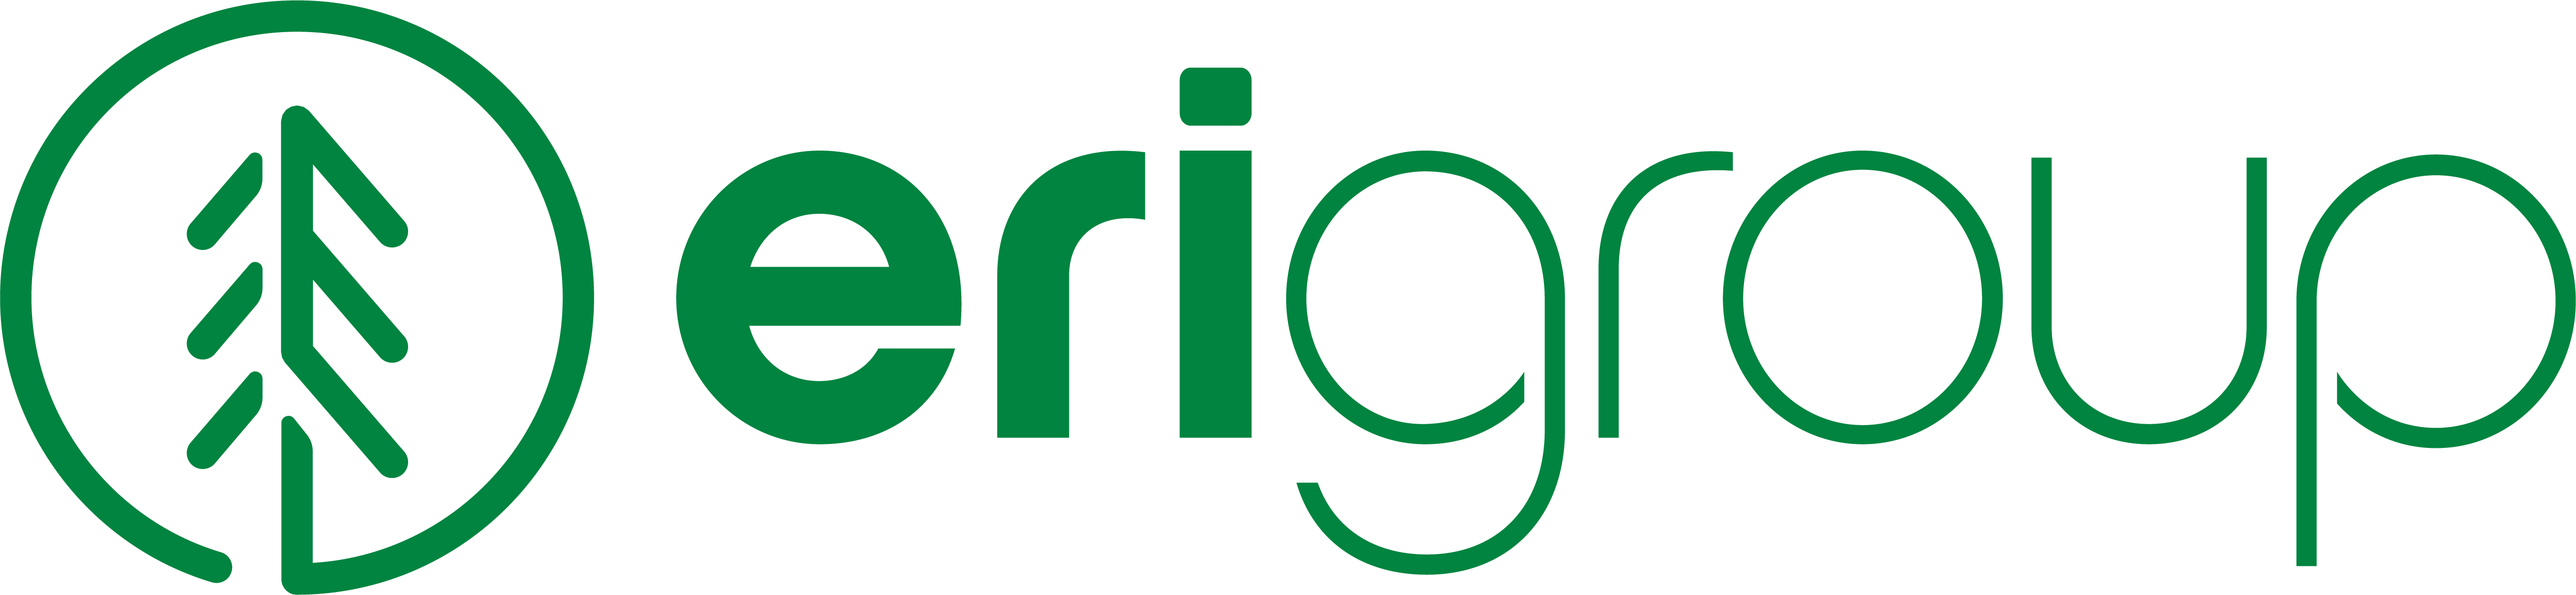 ERI Group logo